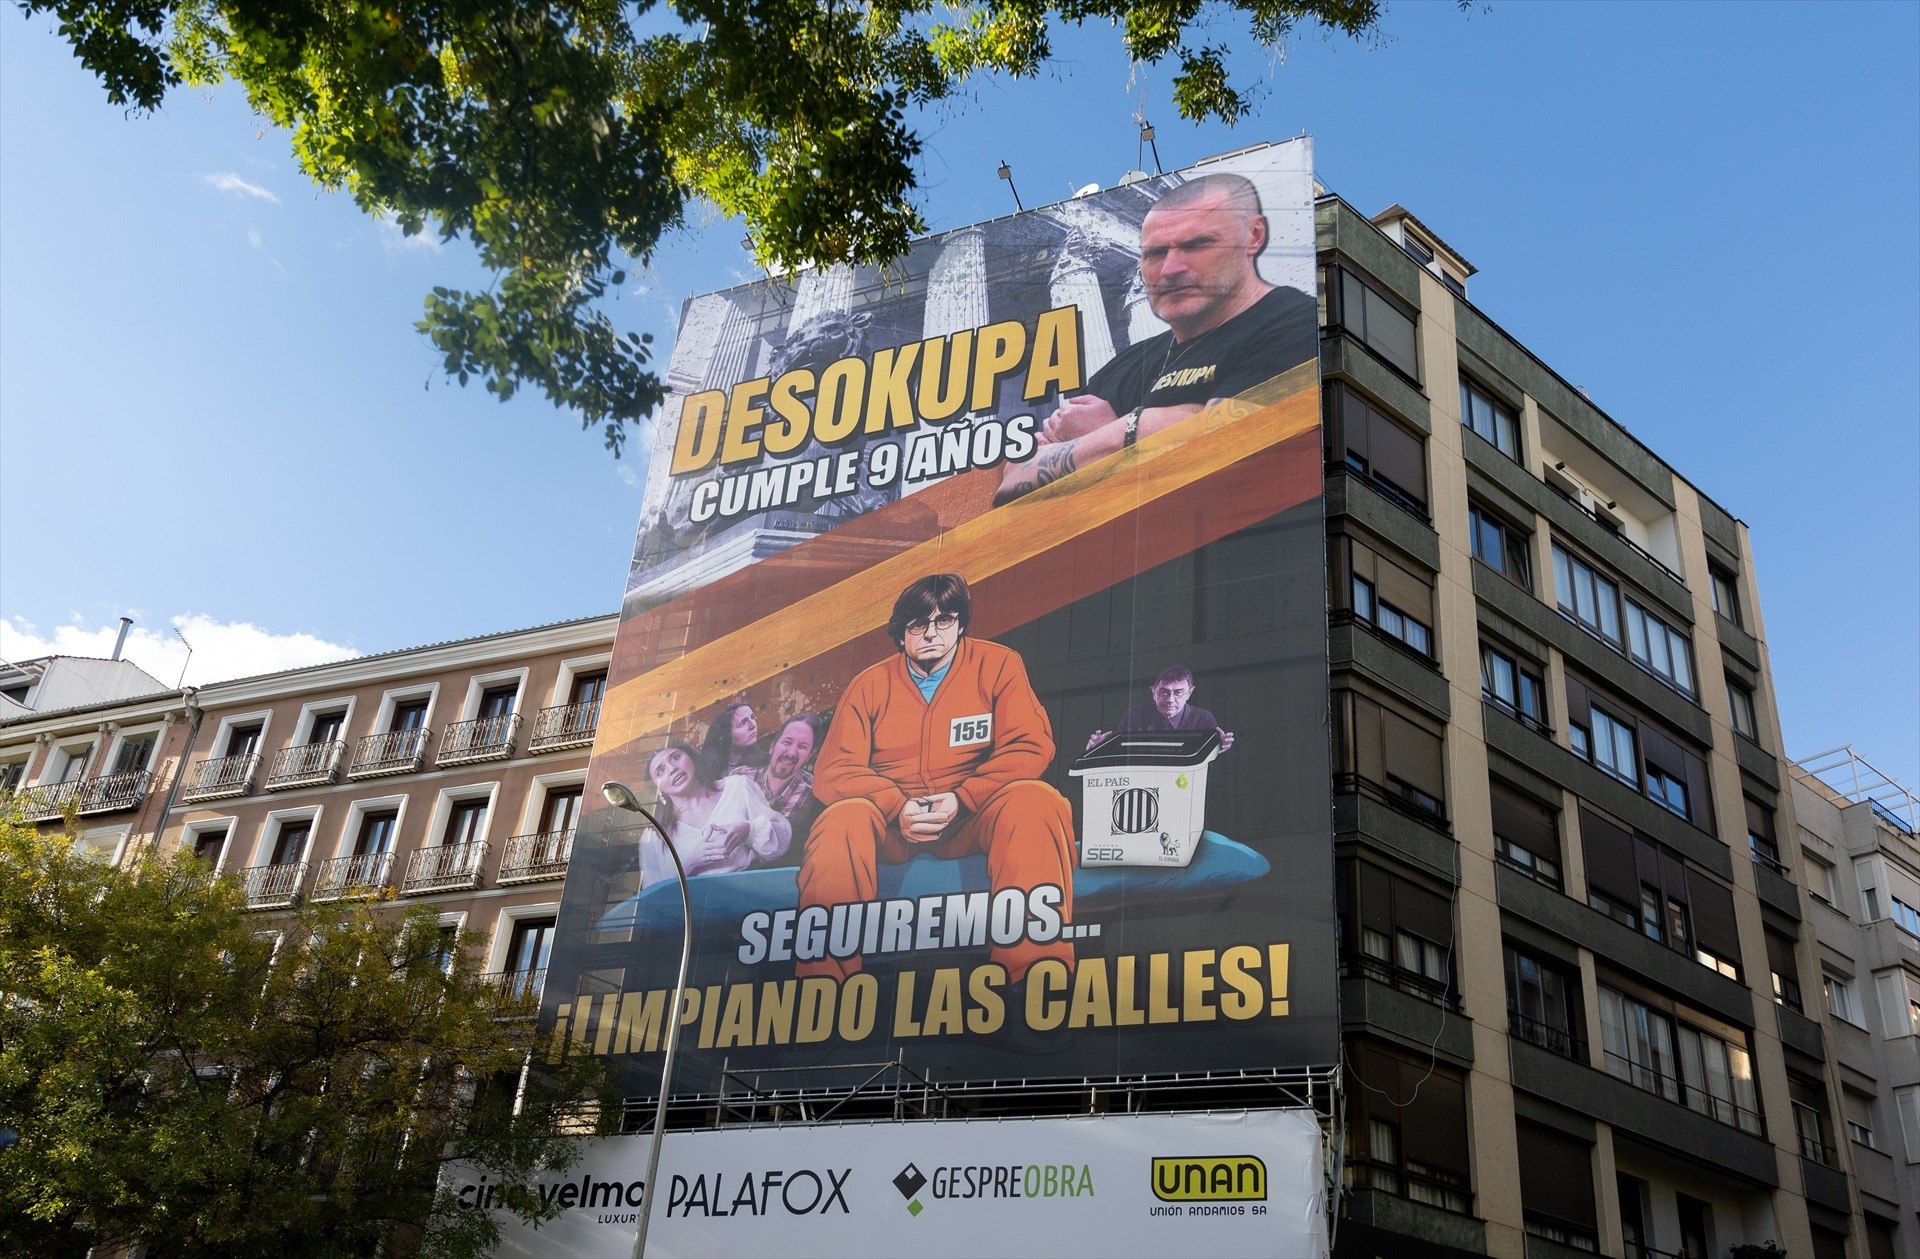 Desokupa viste a Puigdemont de prisionero en una pancarta gigante en el centro de Madrid